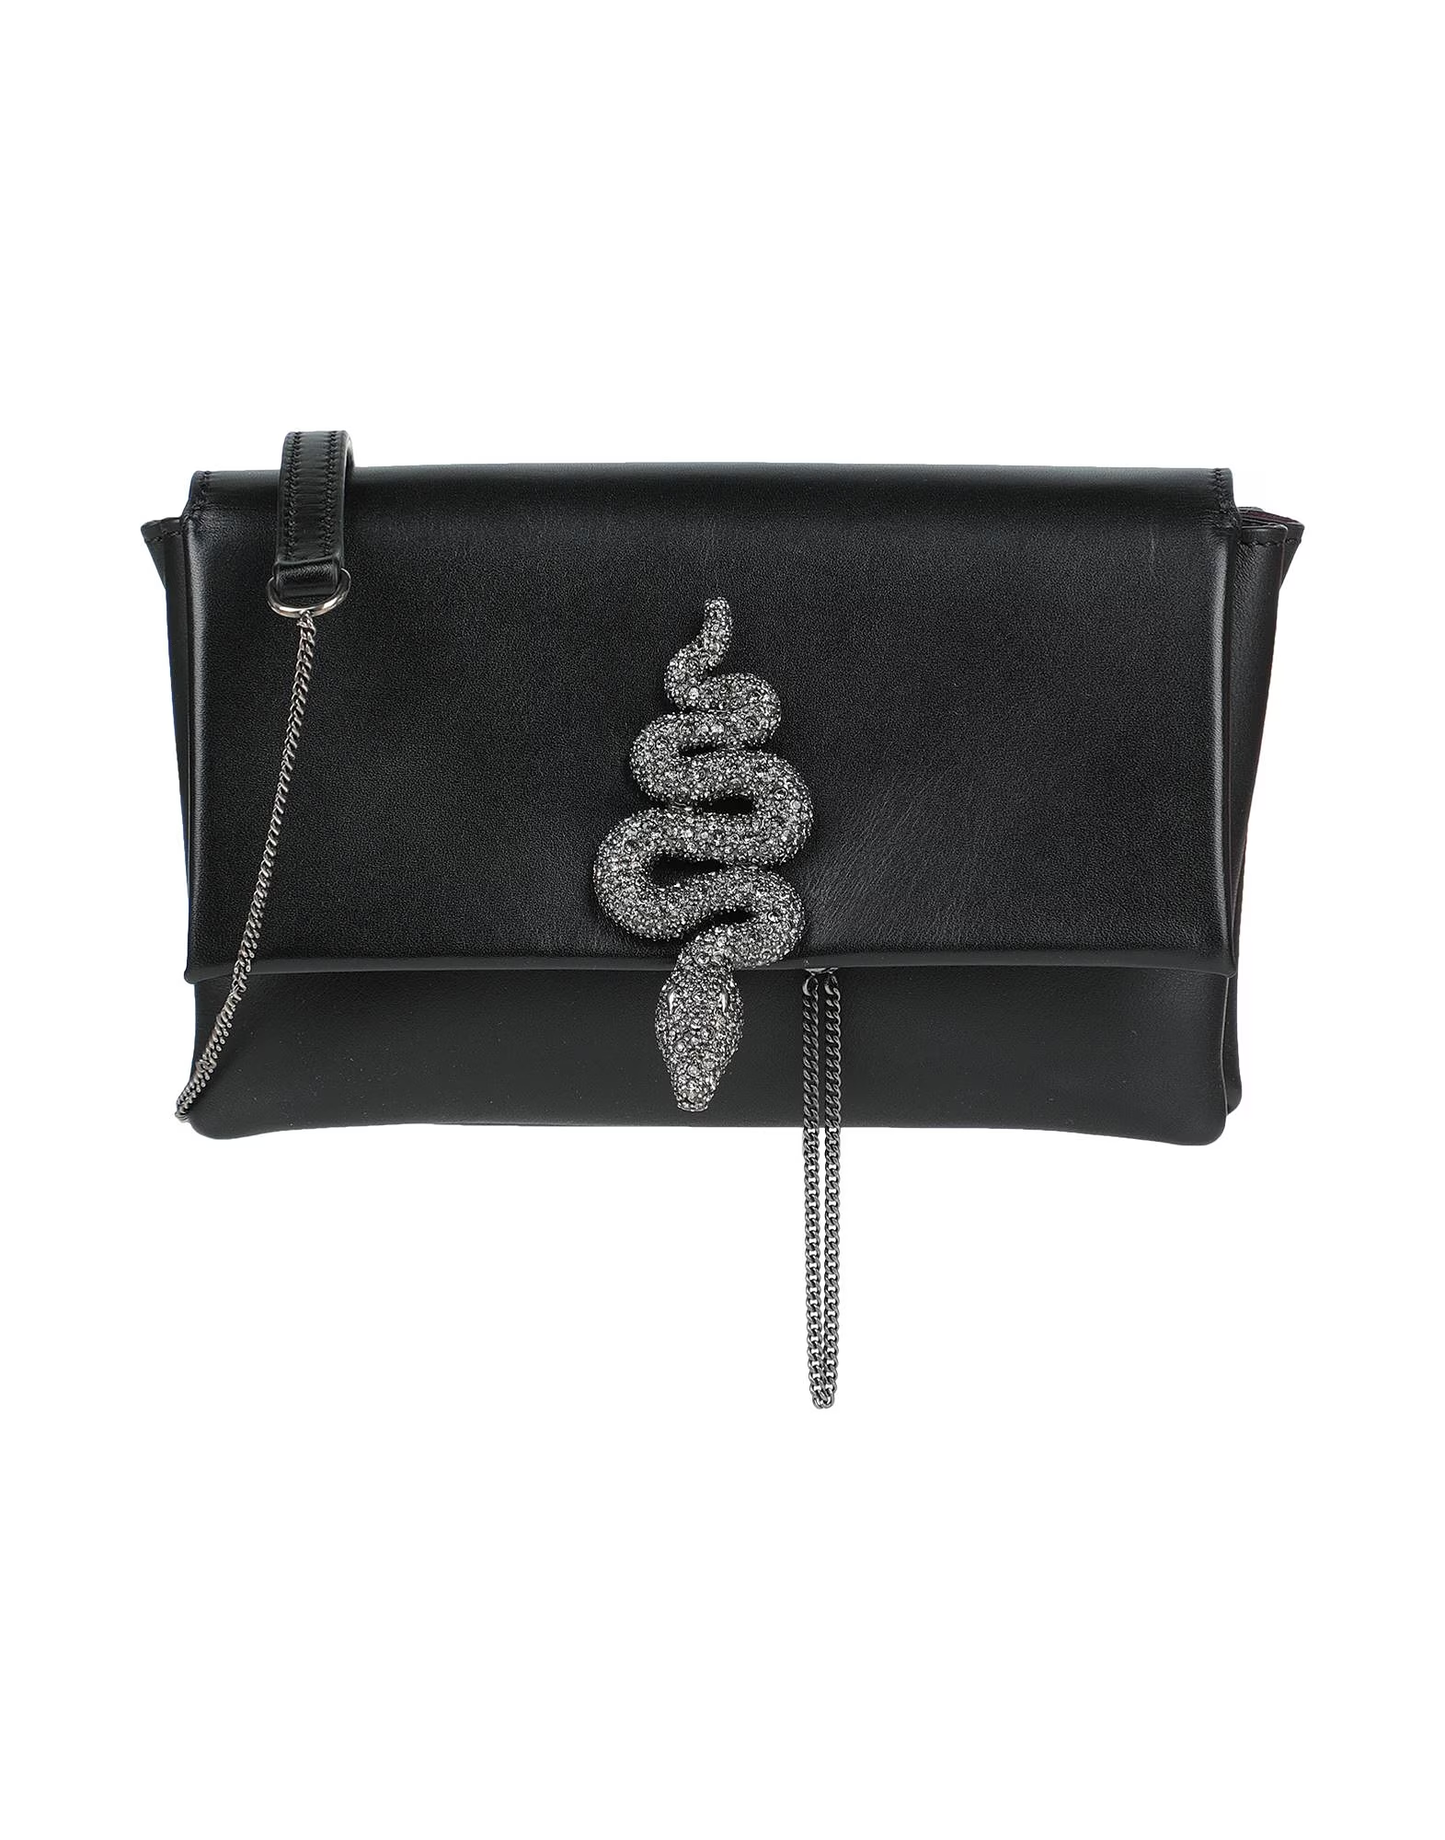 PARIOLI BAGS - Discount Designer Handbags Outlet | VALENTINO GARAVANI Handbags